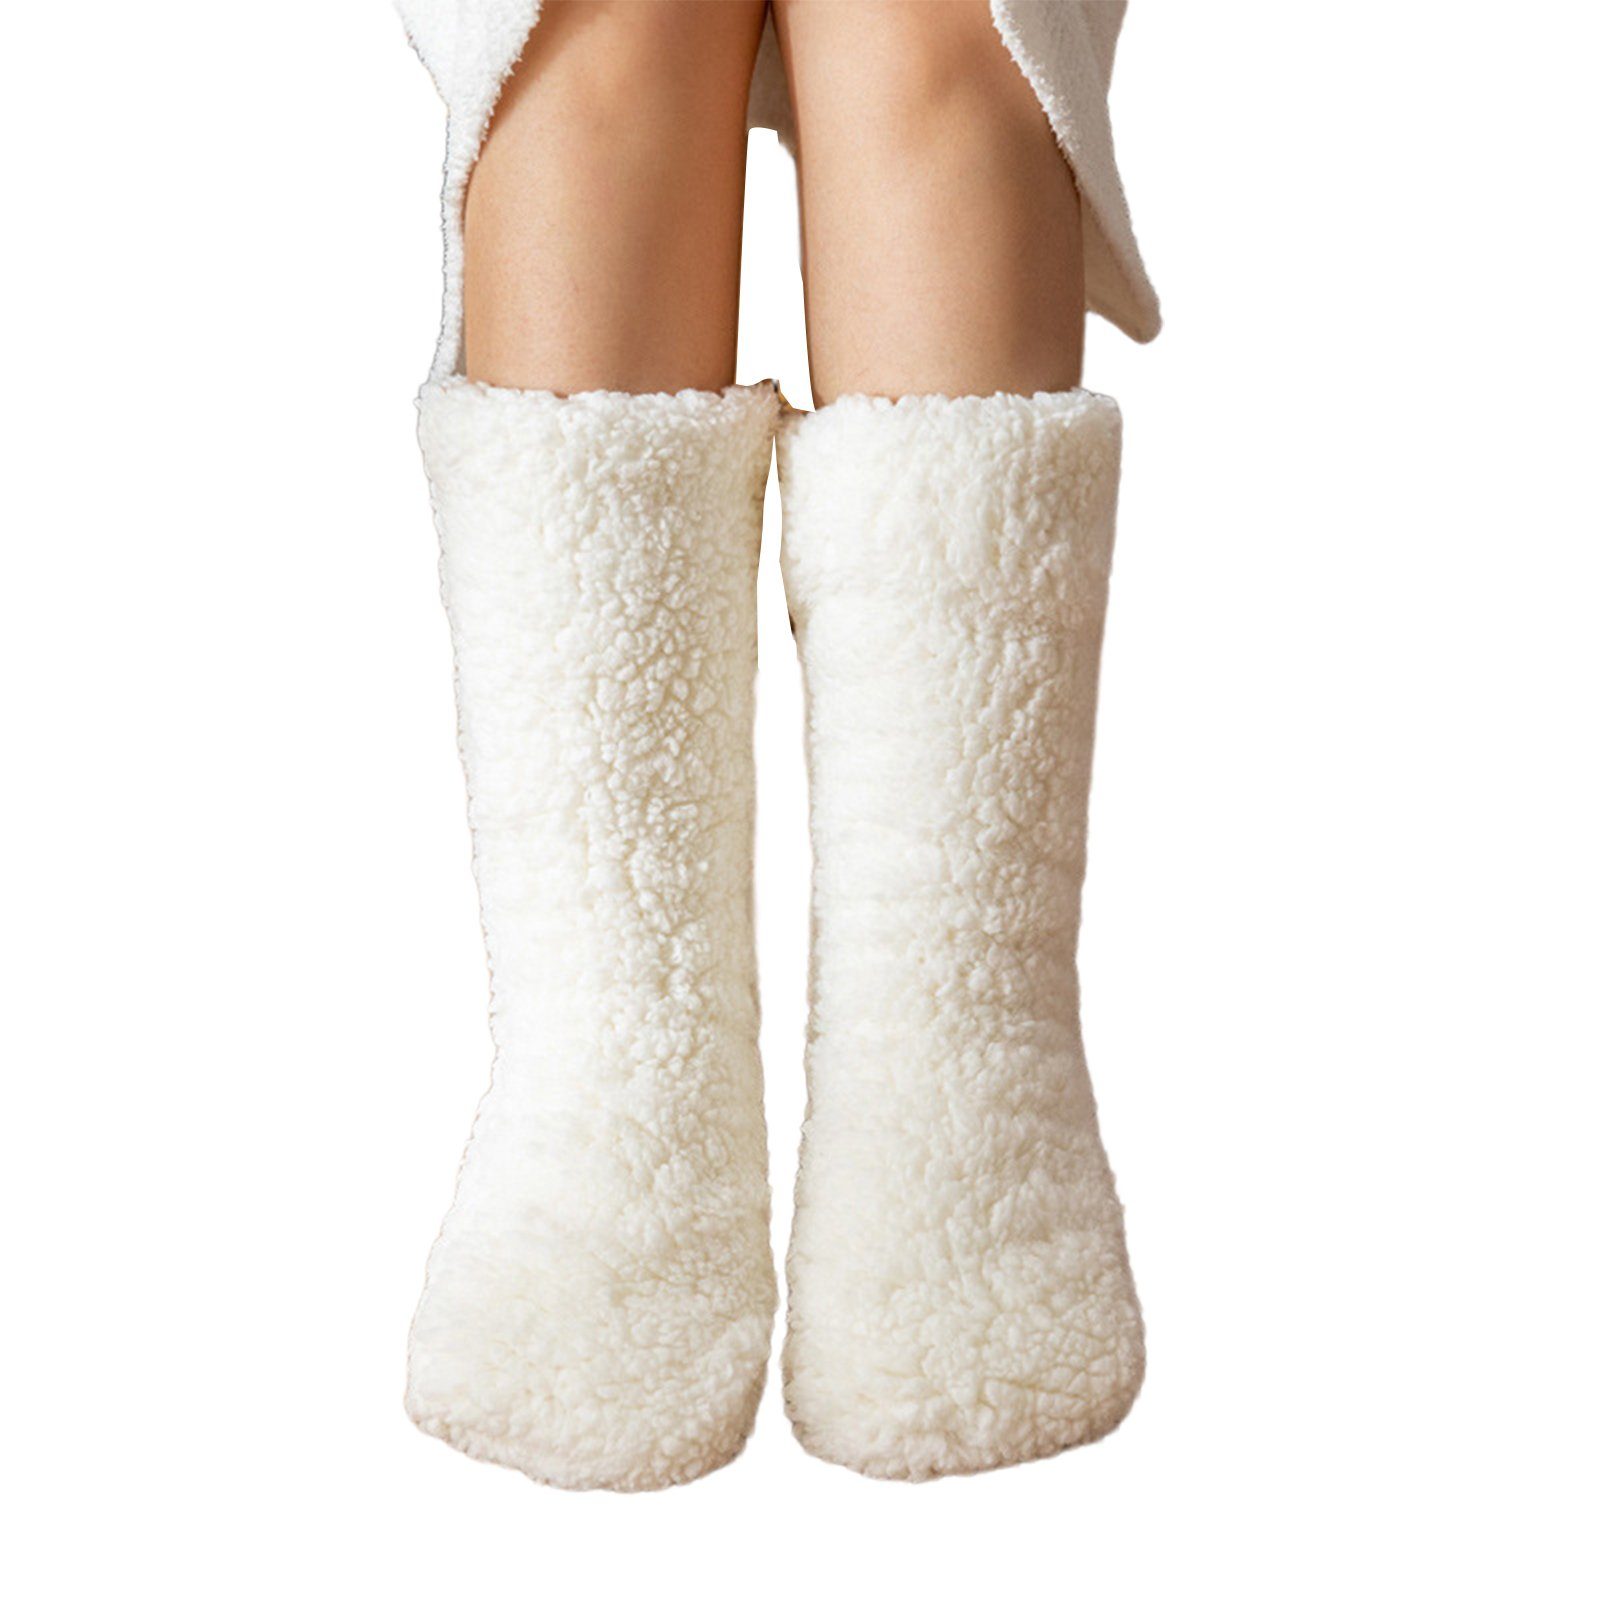 Blusmart Langsocken Winter-Bodensocken, Verdickte Warme Socken, Bequeme Thermosocken Für doppelseitig samtweiß | Socken